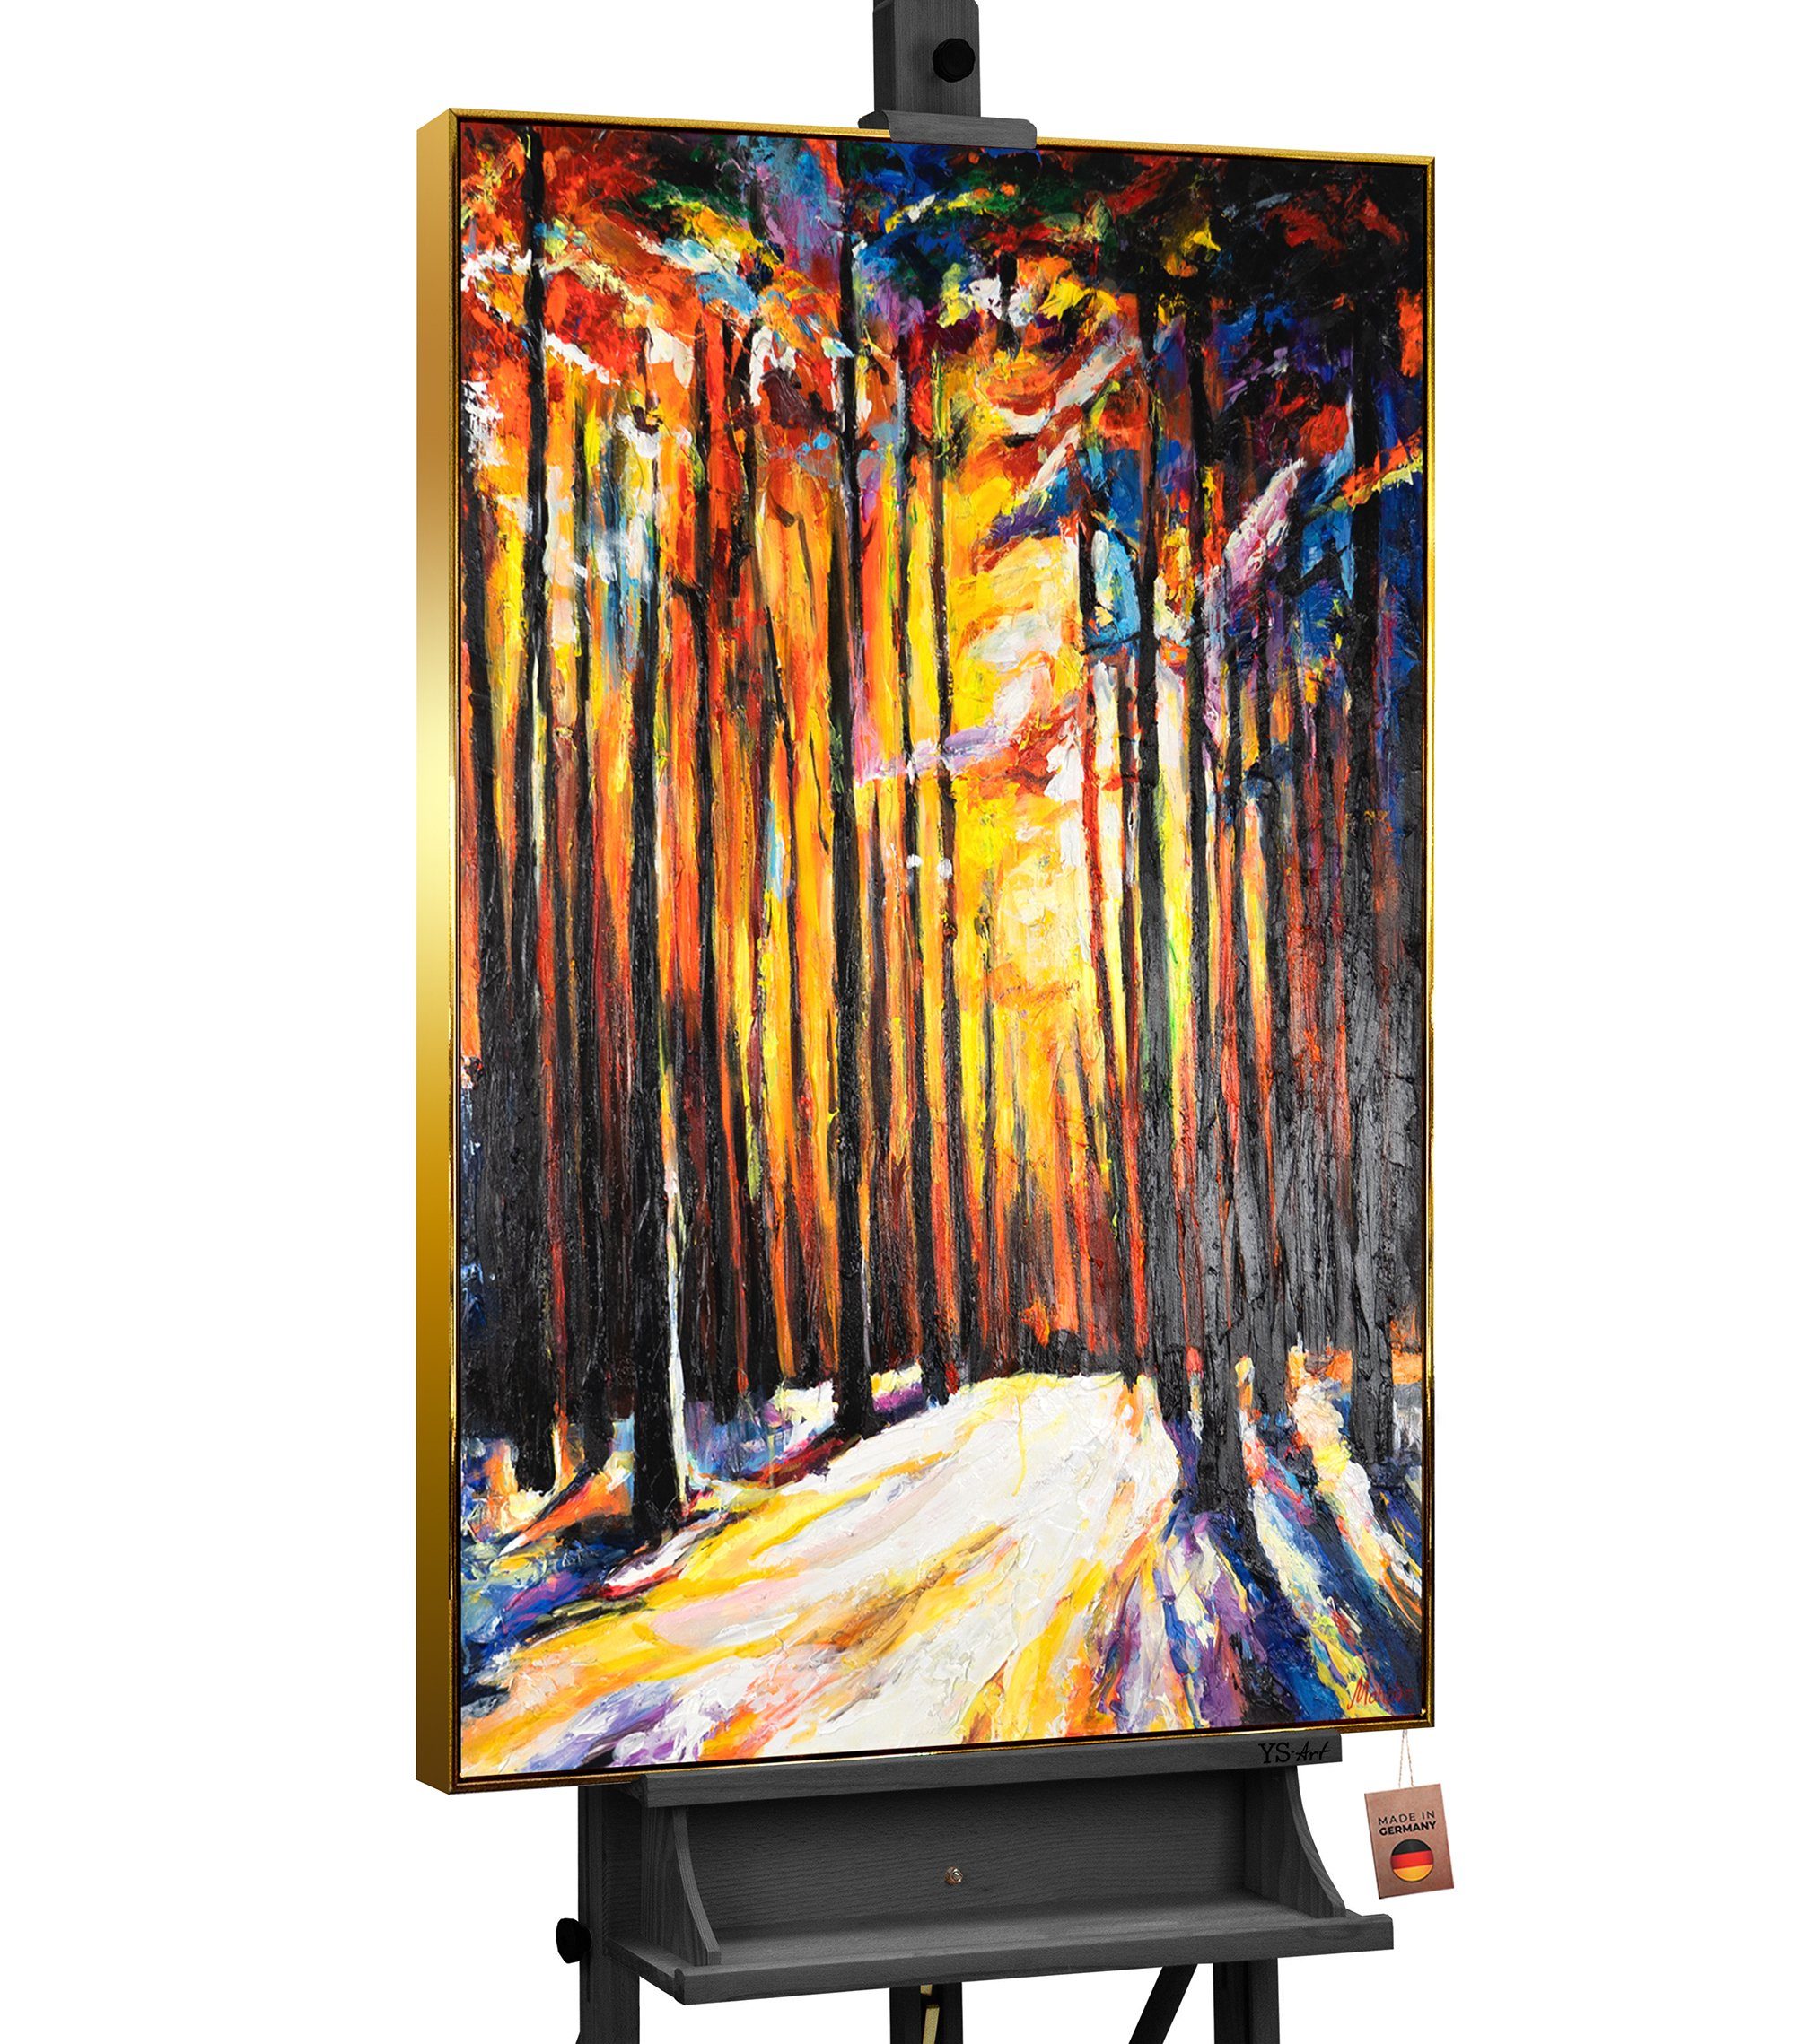 Gemälde YS-Art Gold Waldharmonie, Mit in Rahmen Wald